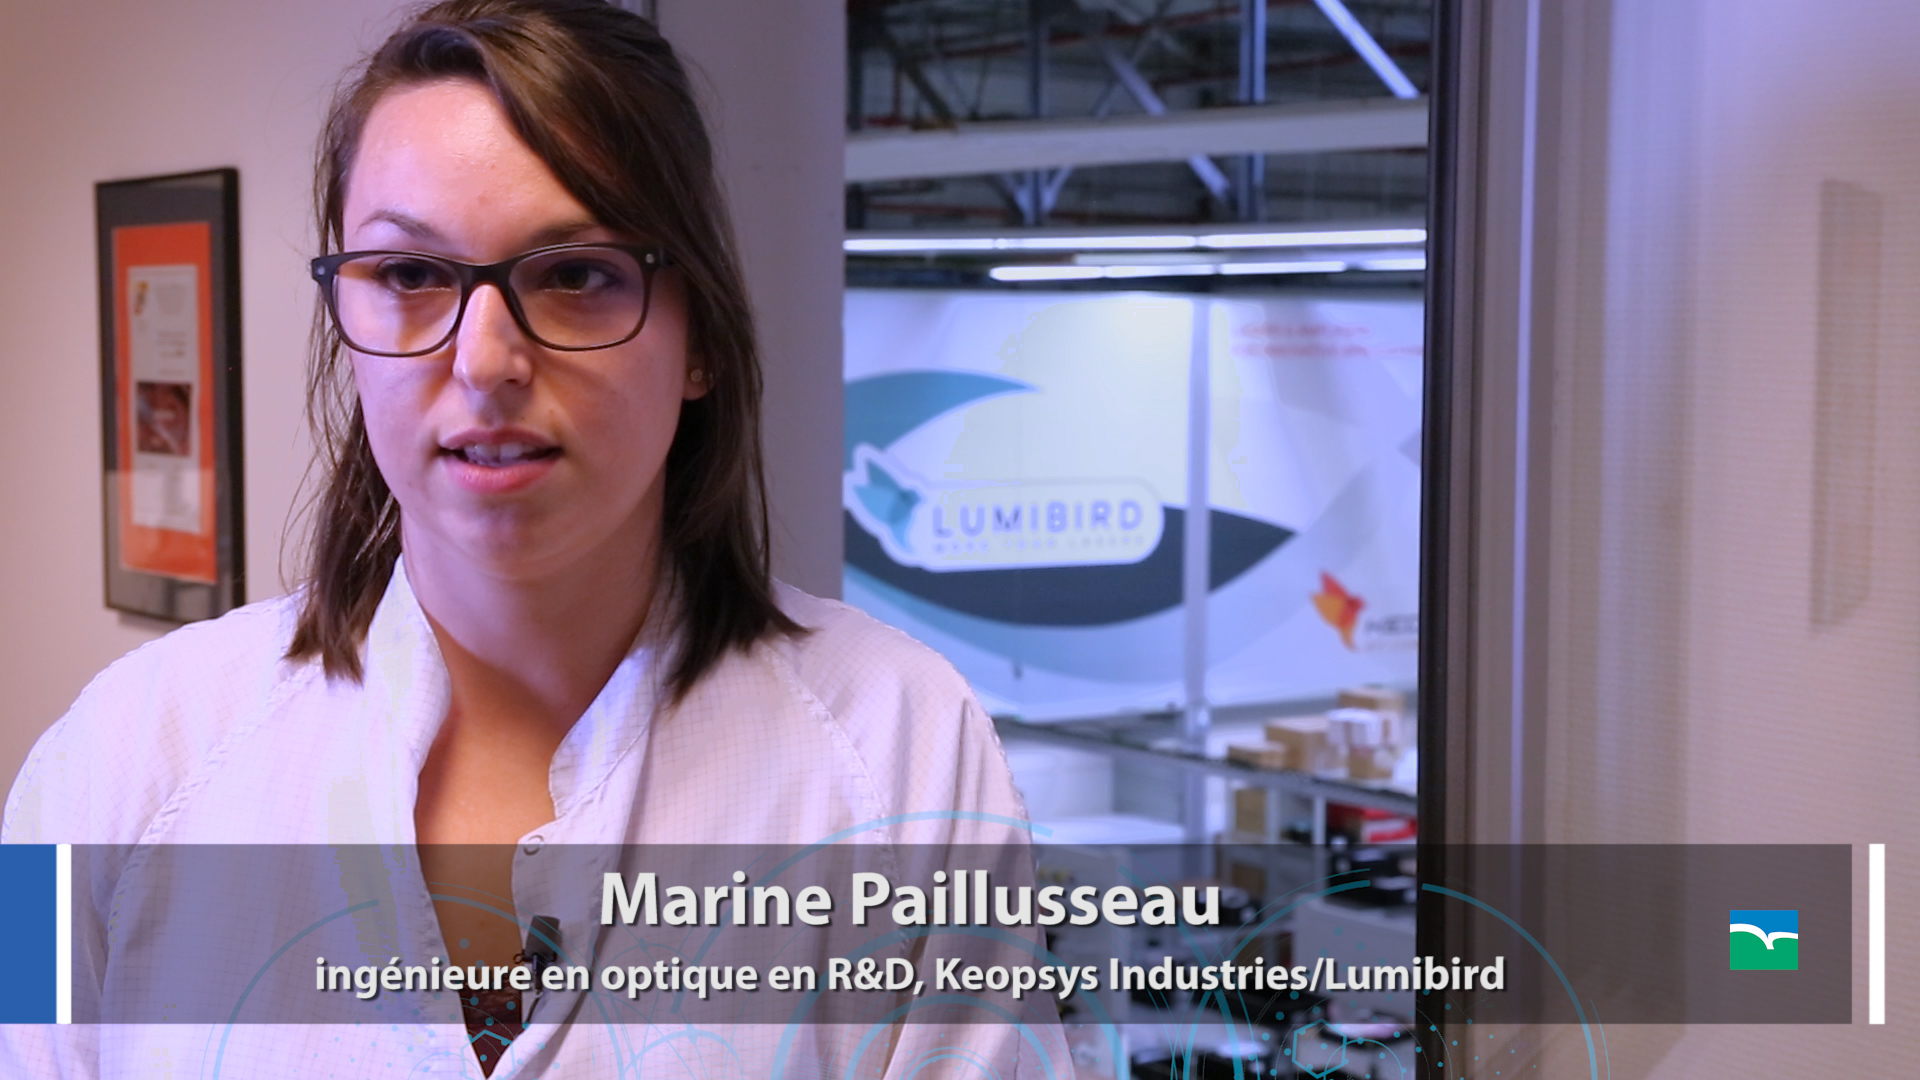 Marine Paillusseau, ingénieure en optique en R&D, Keopsys Industries/Lumibird